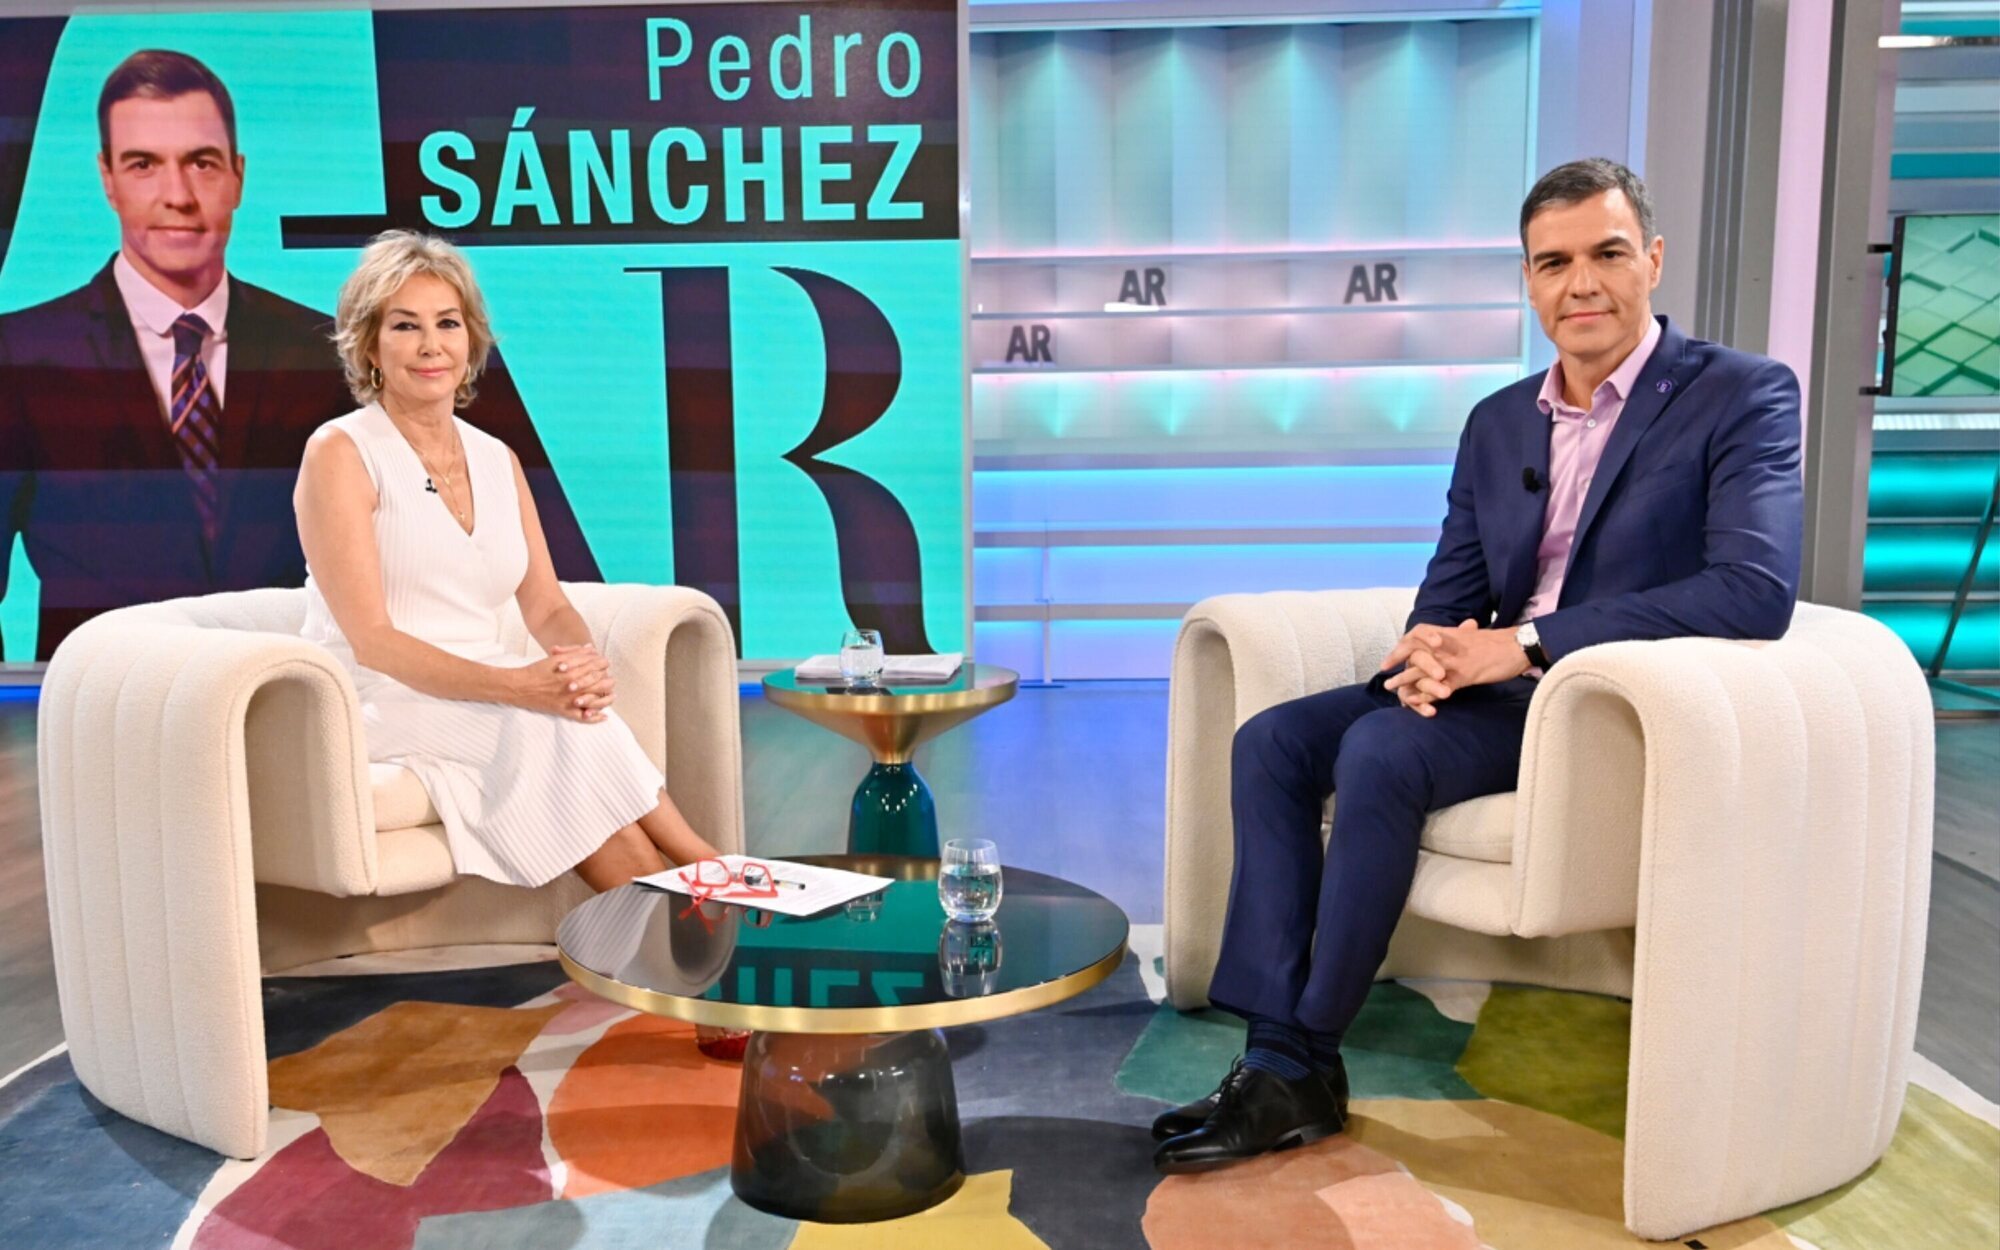 Pedro Sánchez no titubea frente a Ana Rosa Quintana en un careo personal: "No describe, está opinando"